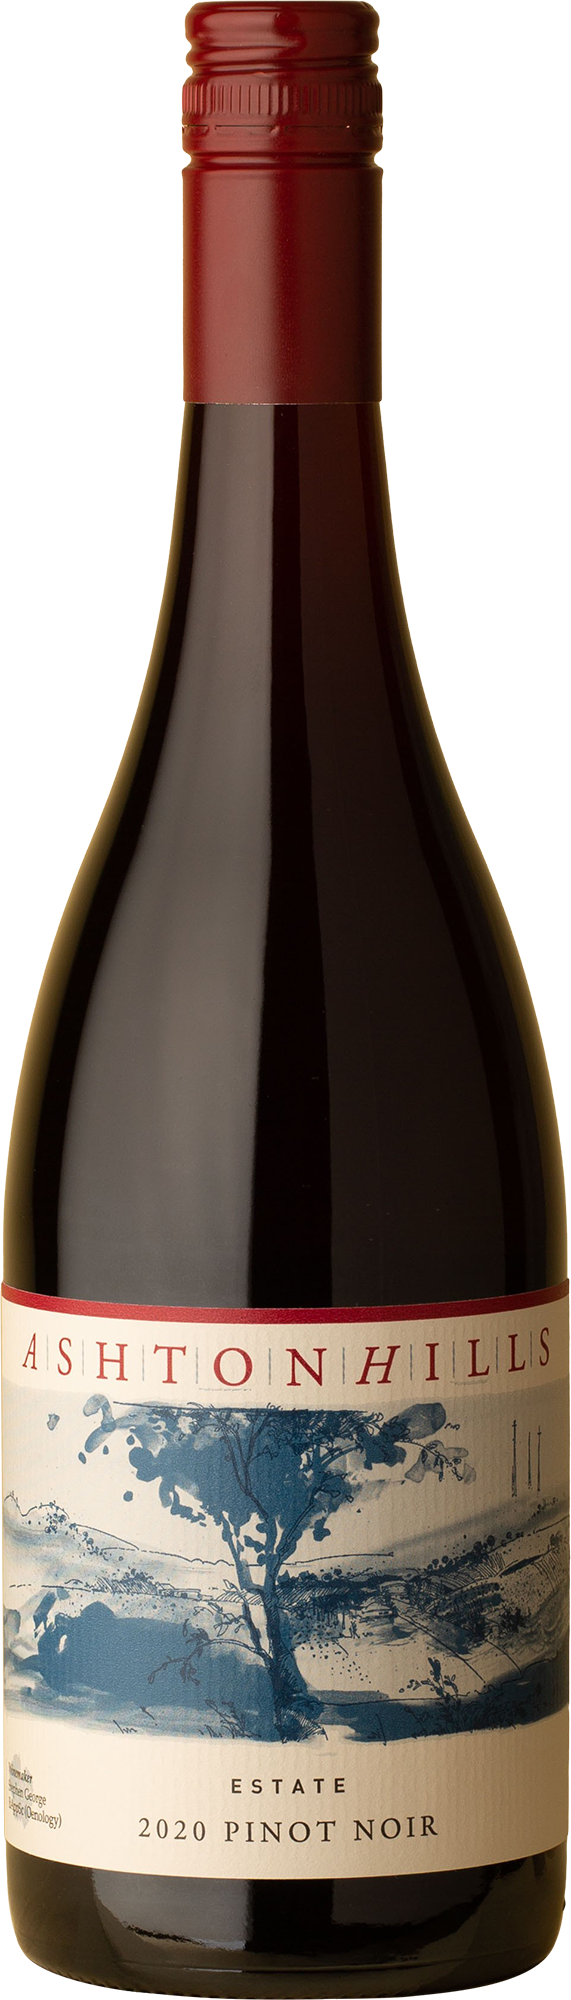 Ashton Hills - Estate Pinot Noir 2020 Red Wine